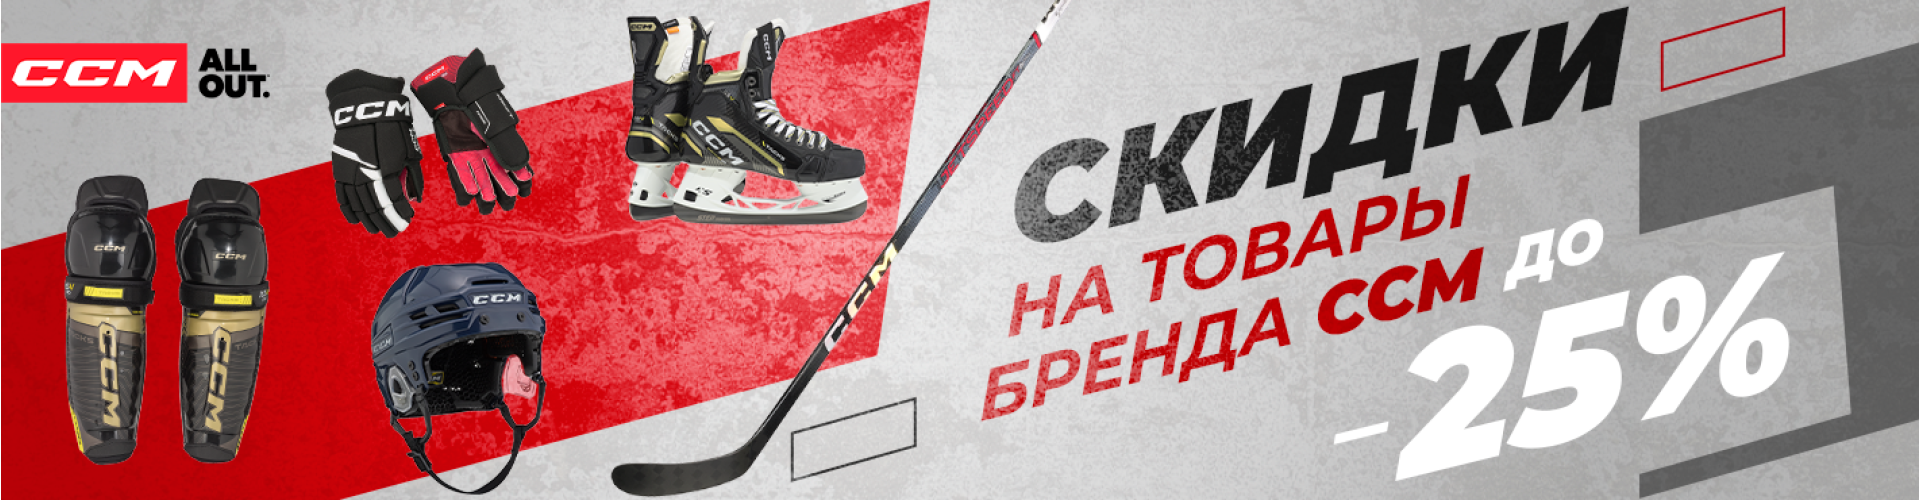 Скидки до 25% на экипировку от CCM – готовьтесь к новому сезону хоккея!